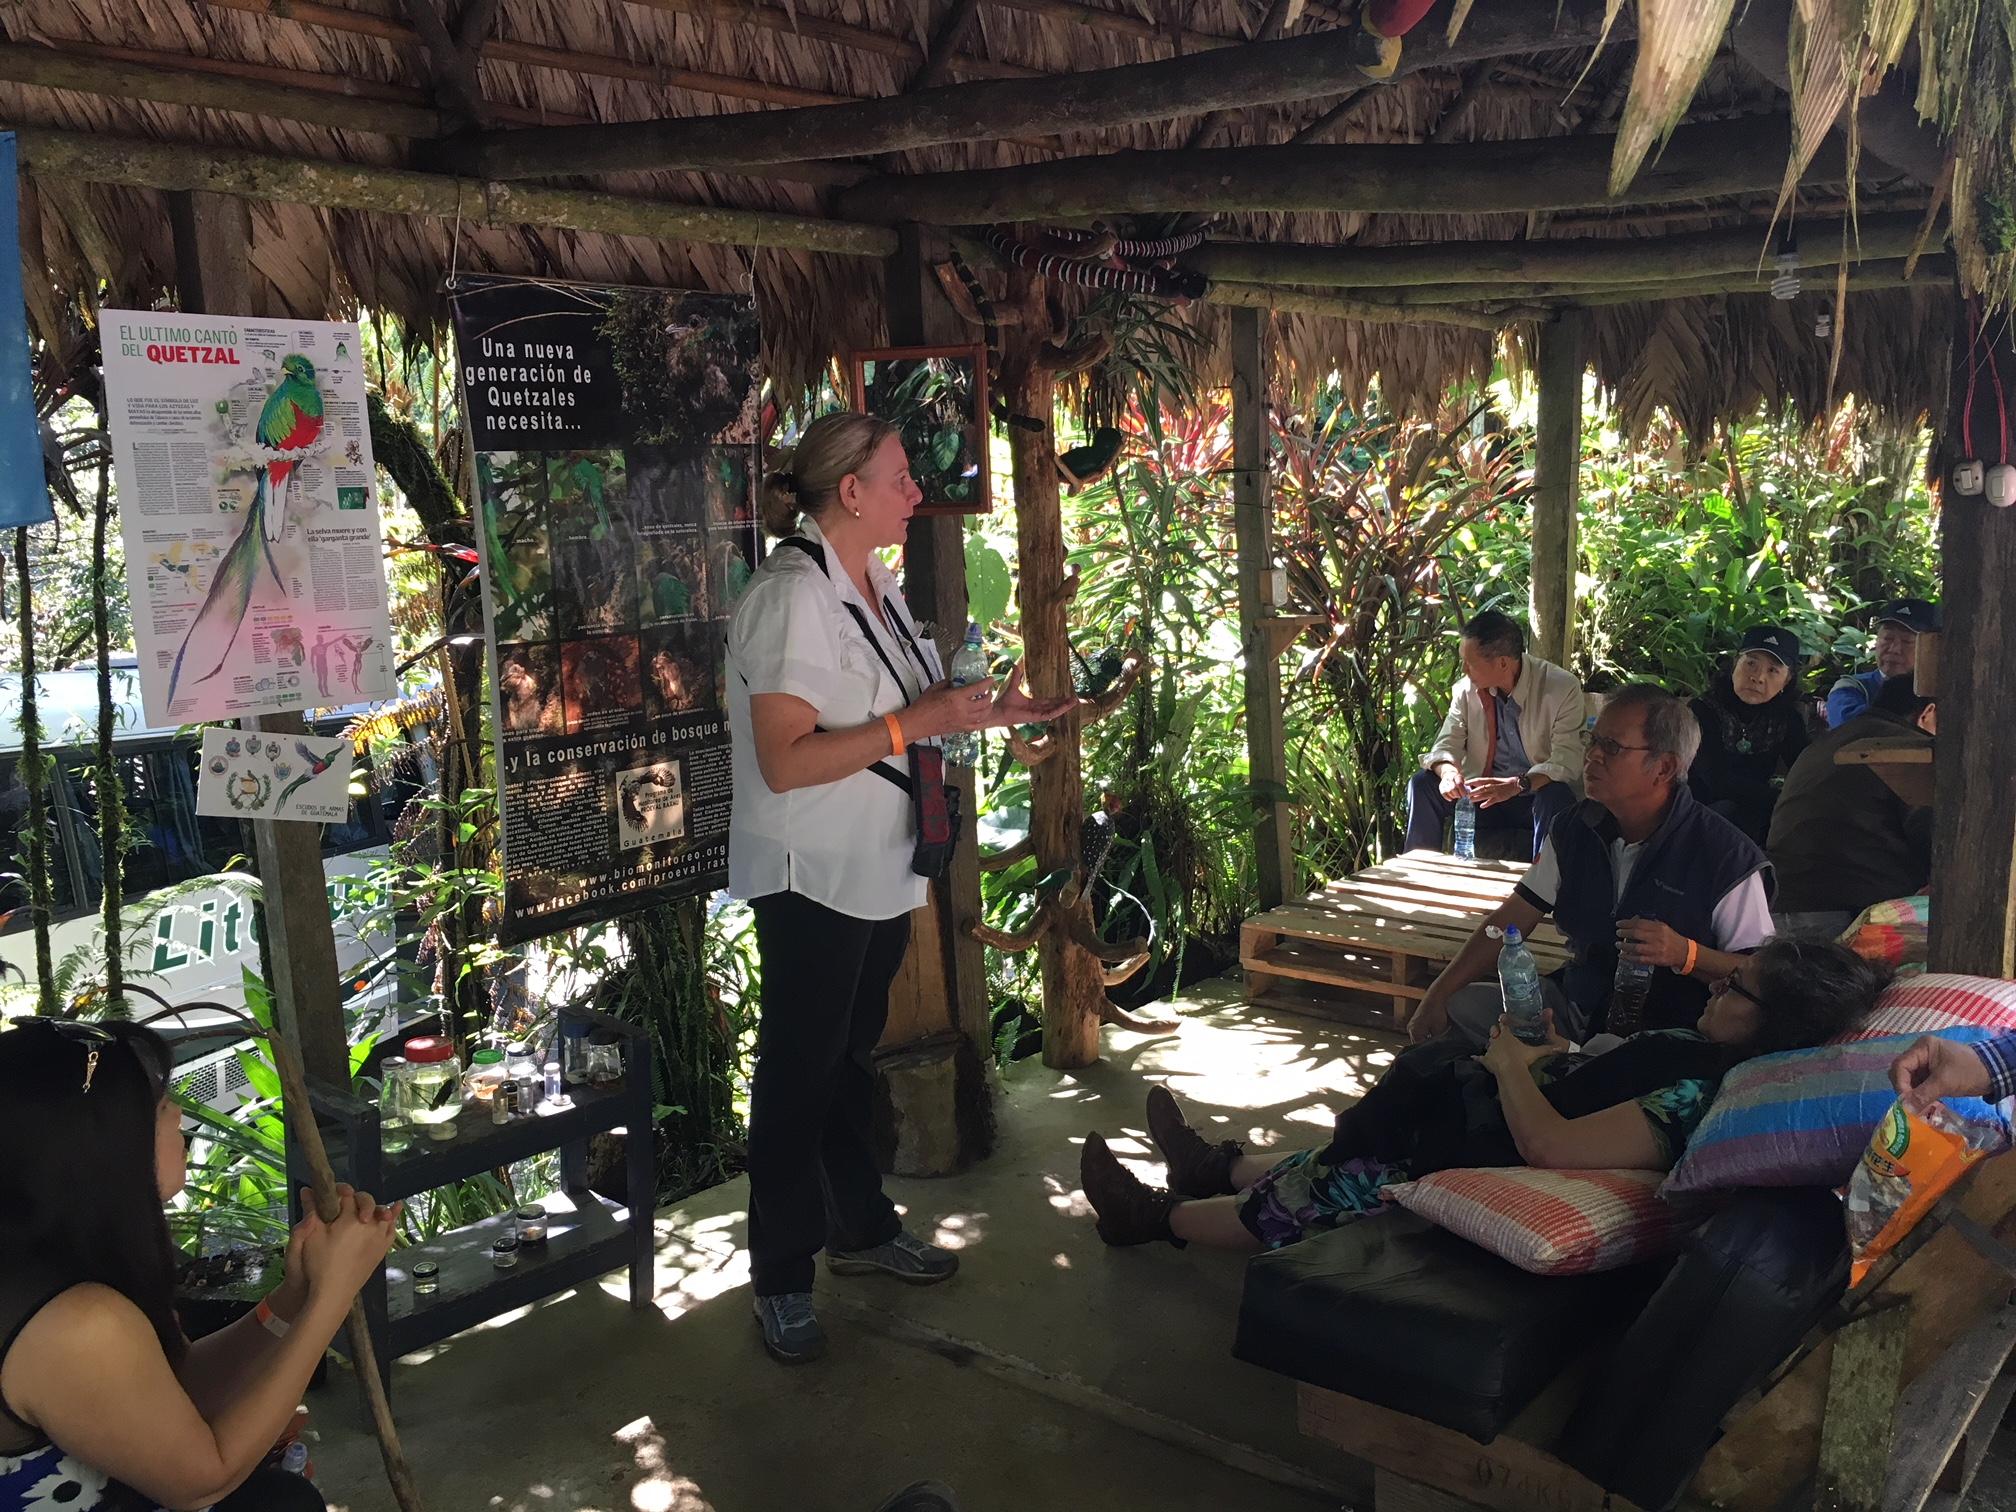 與會團員聽取導覽員解說自然生態及瓜國quetzal國鳥棲習特性